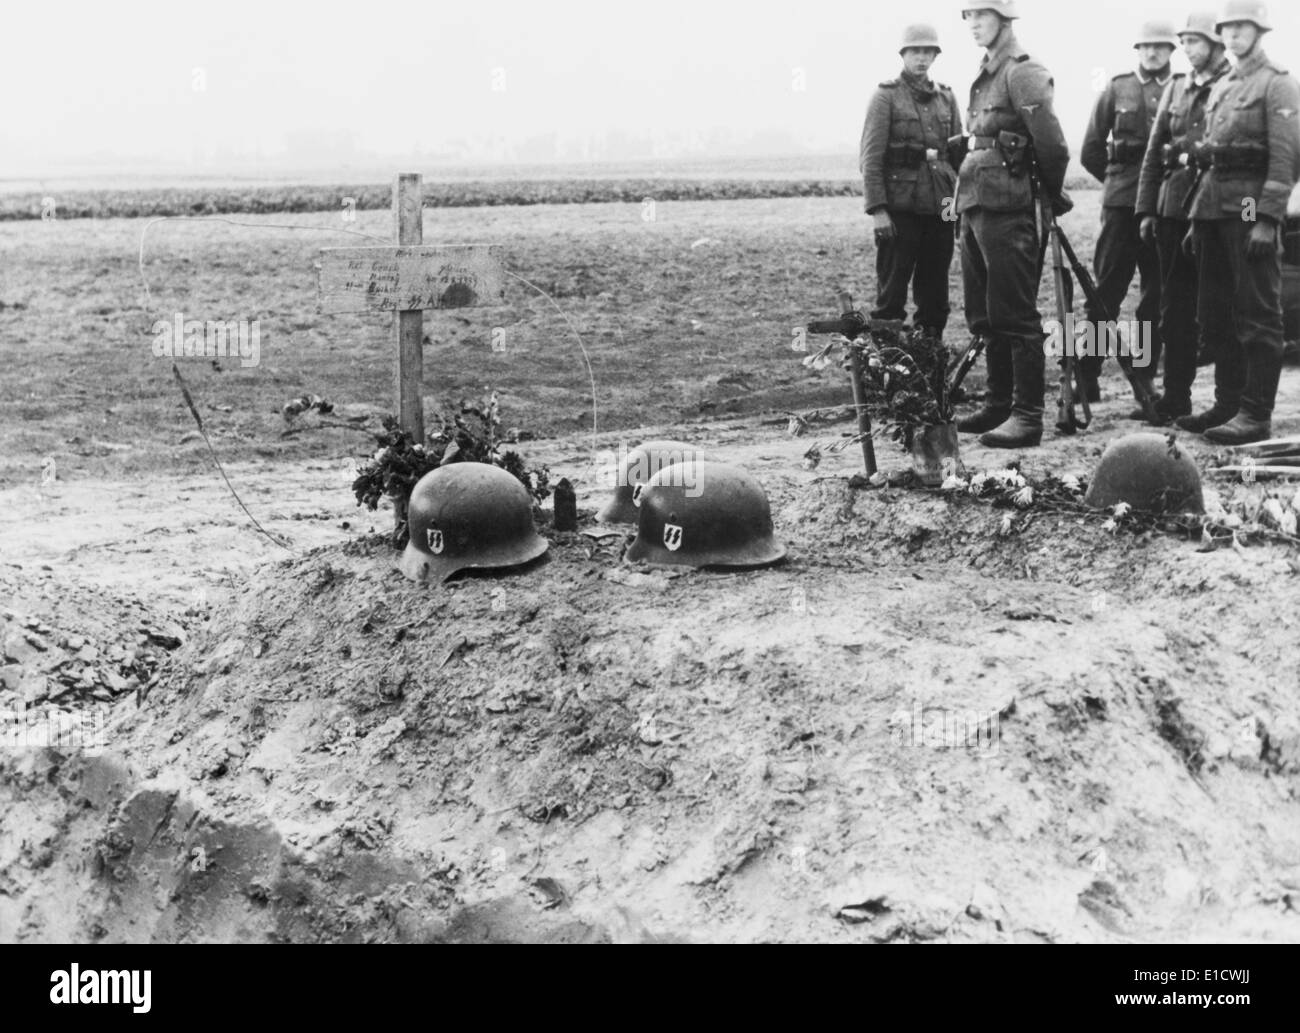 Waffen-SS allemands des troupes à la tête casque tombes de leurs semblables lors de l'invasion de la Pologne. 1939 Septembre. La Seconde Guerre mondiale 2. Banque D'Images